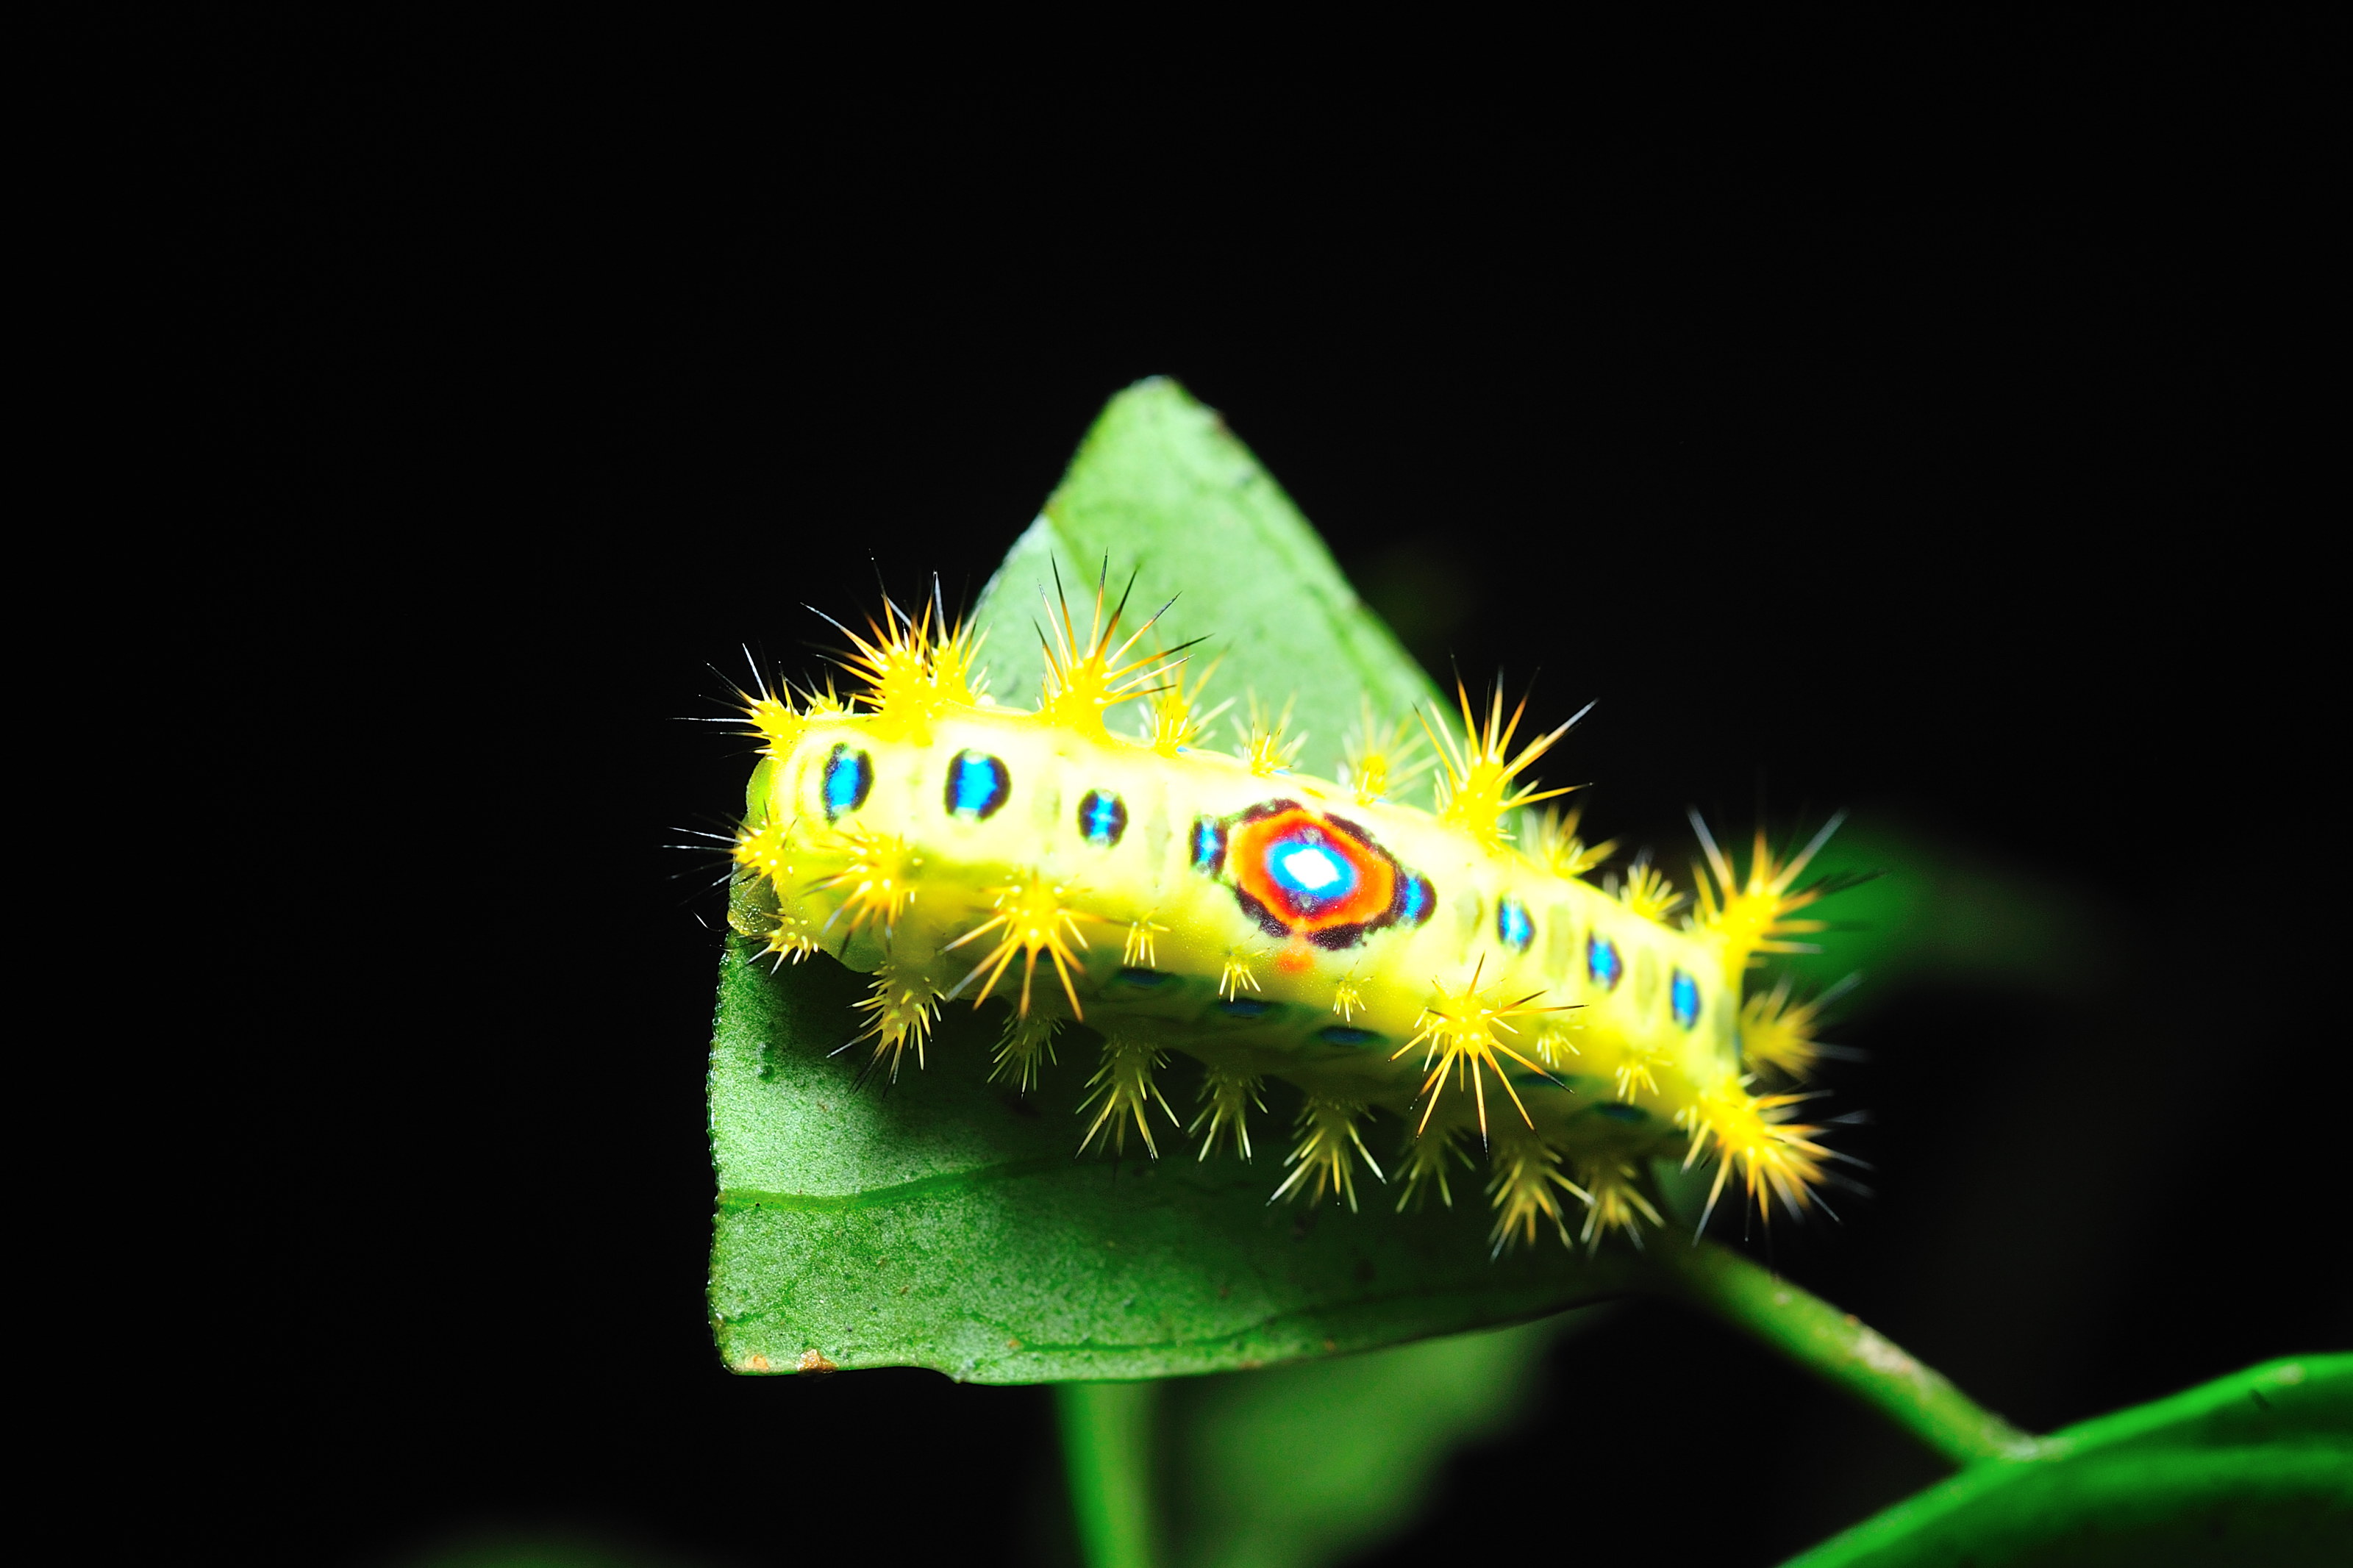 Free download wallpaper Animal, Caterpillar on your PC desktop